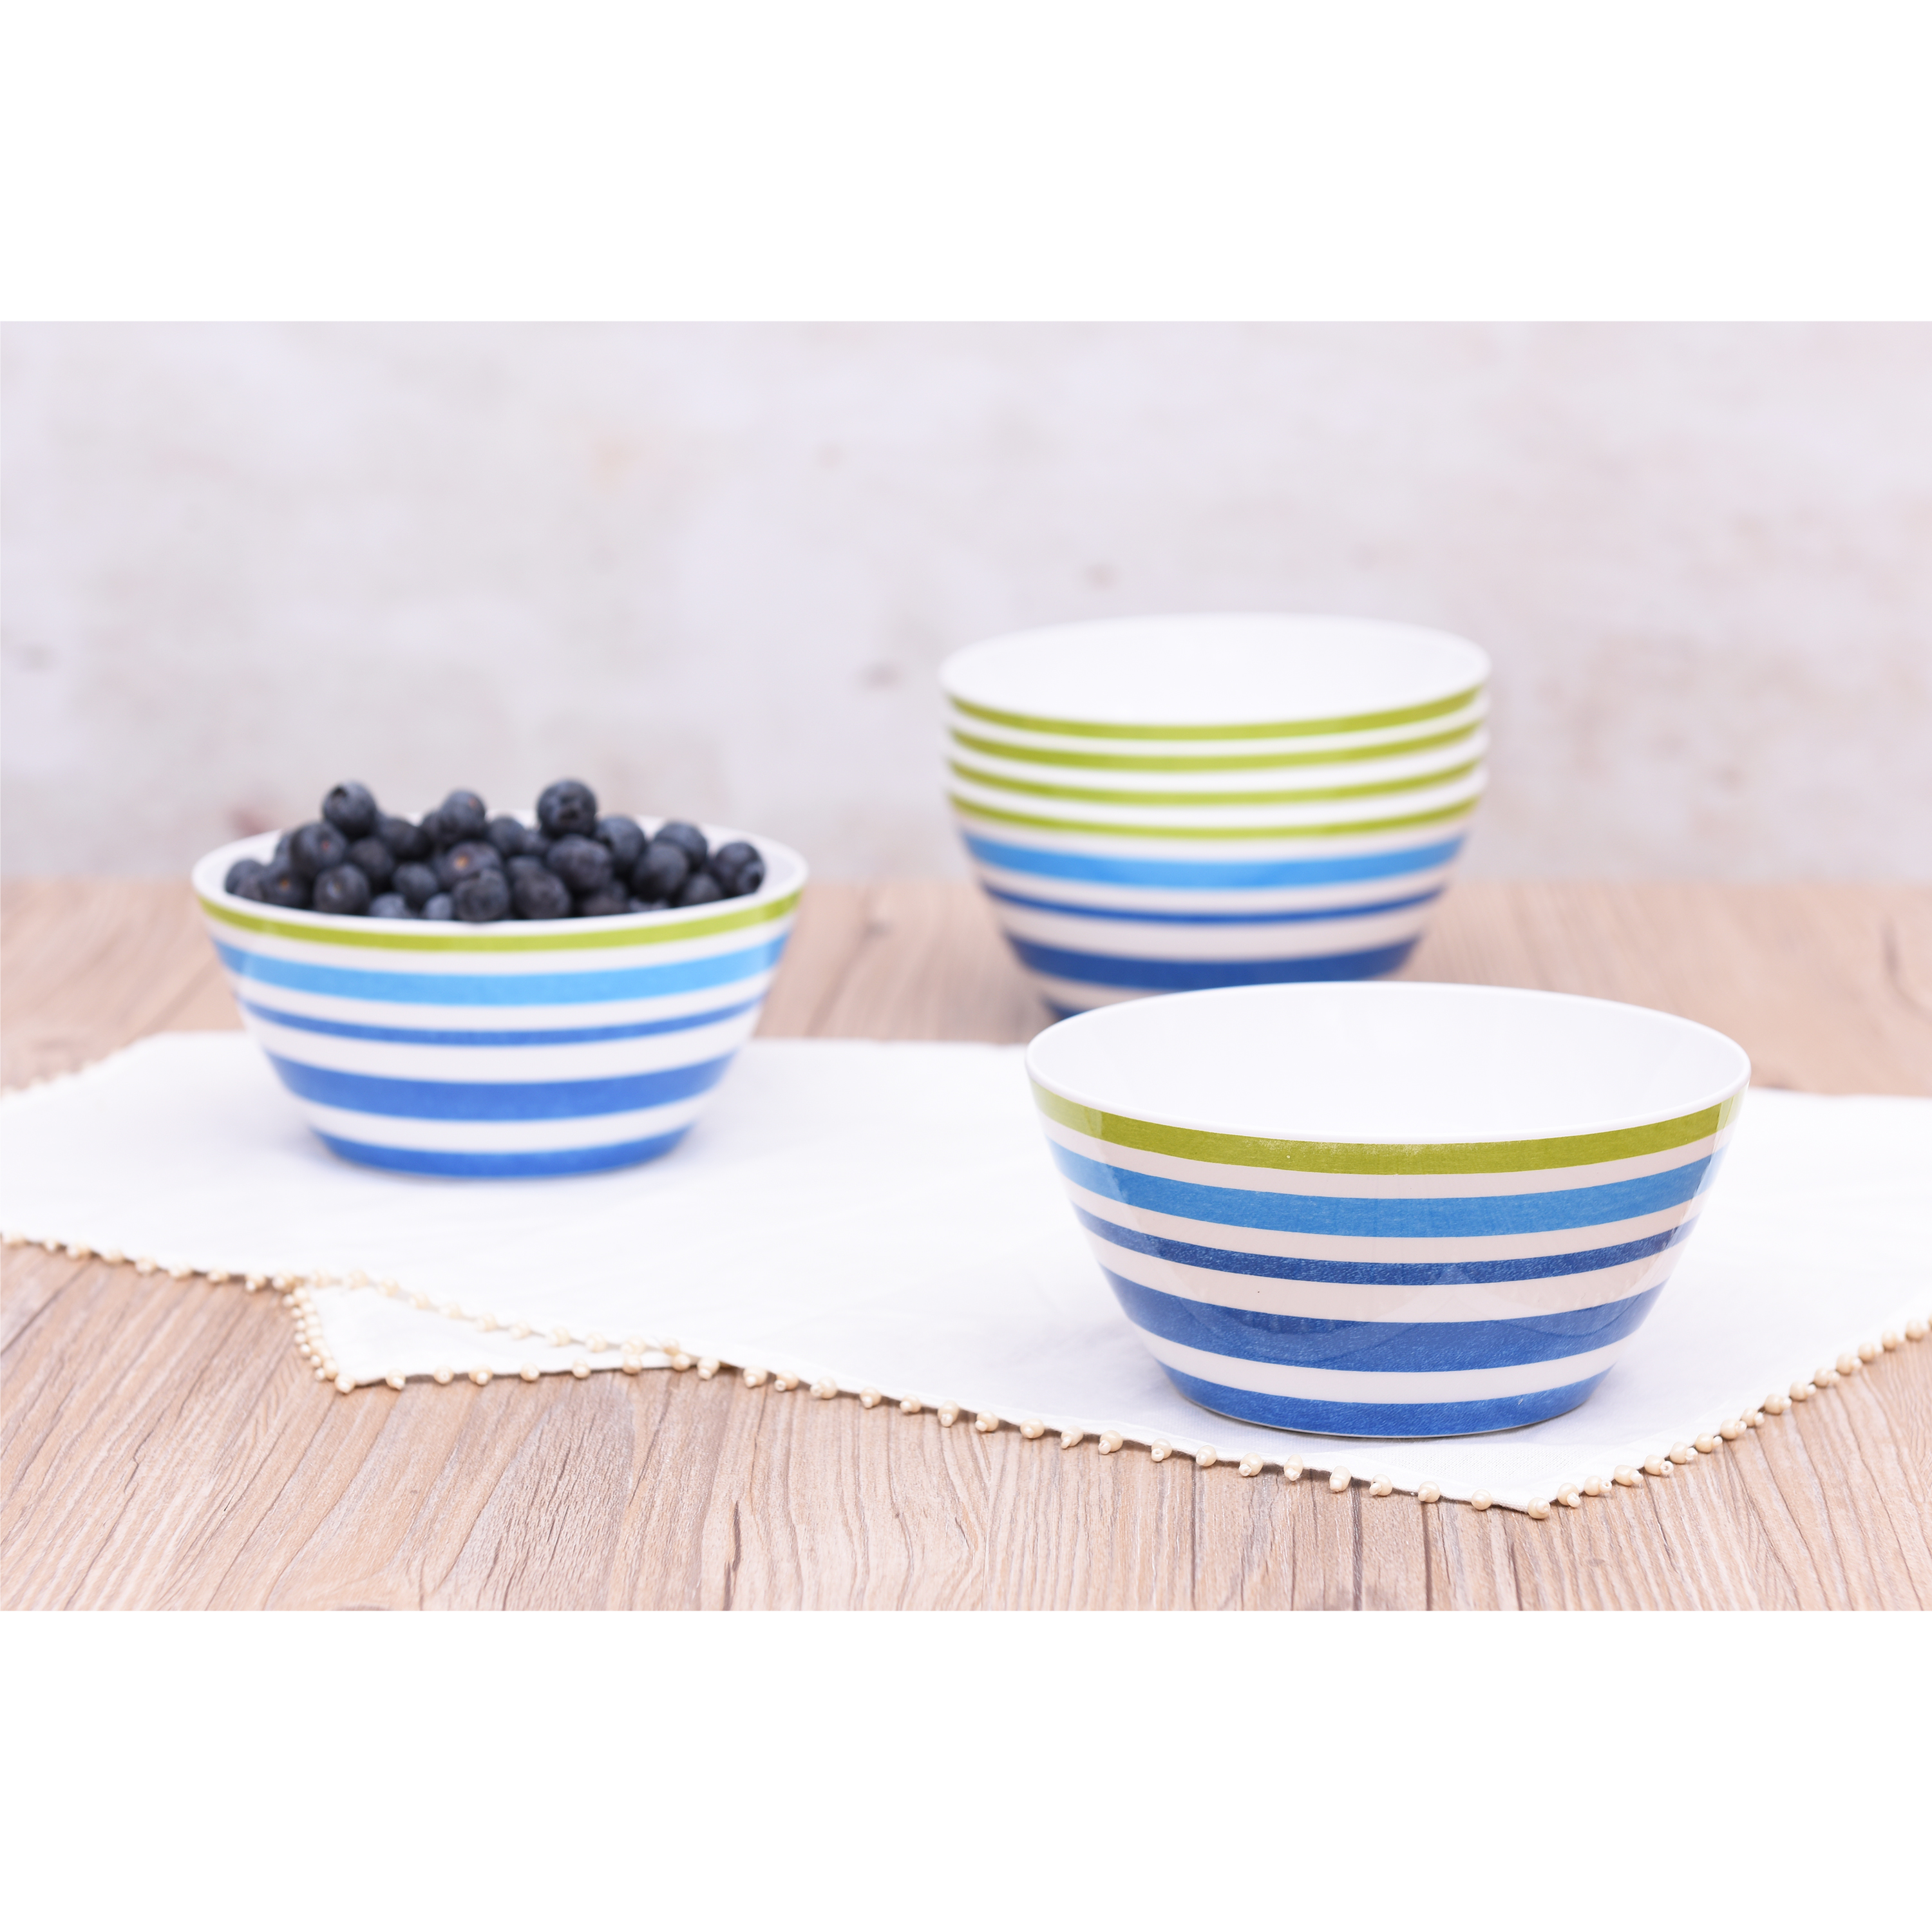 Mainstays Kids Melamine Blue Striped Bowls, Set of 6 - image 3 of 5